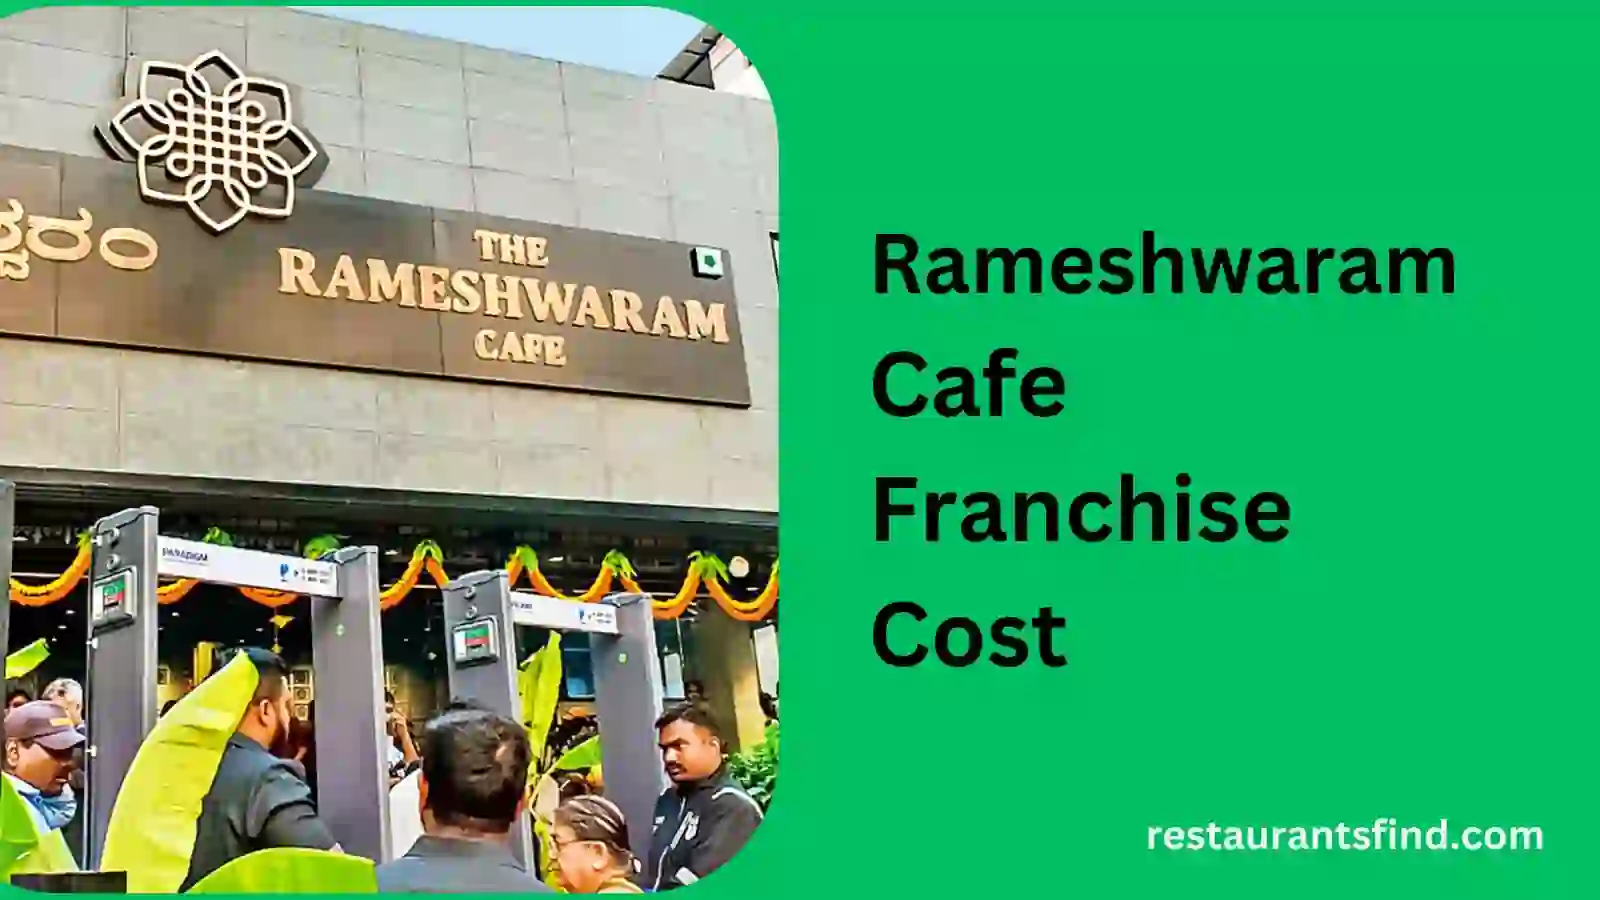 Rameshwaram Cafe Franchise Cost